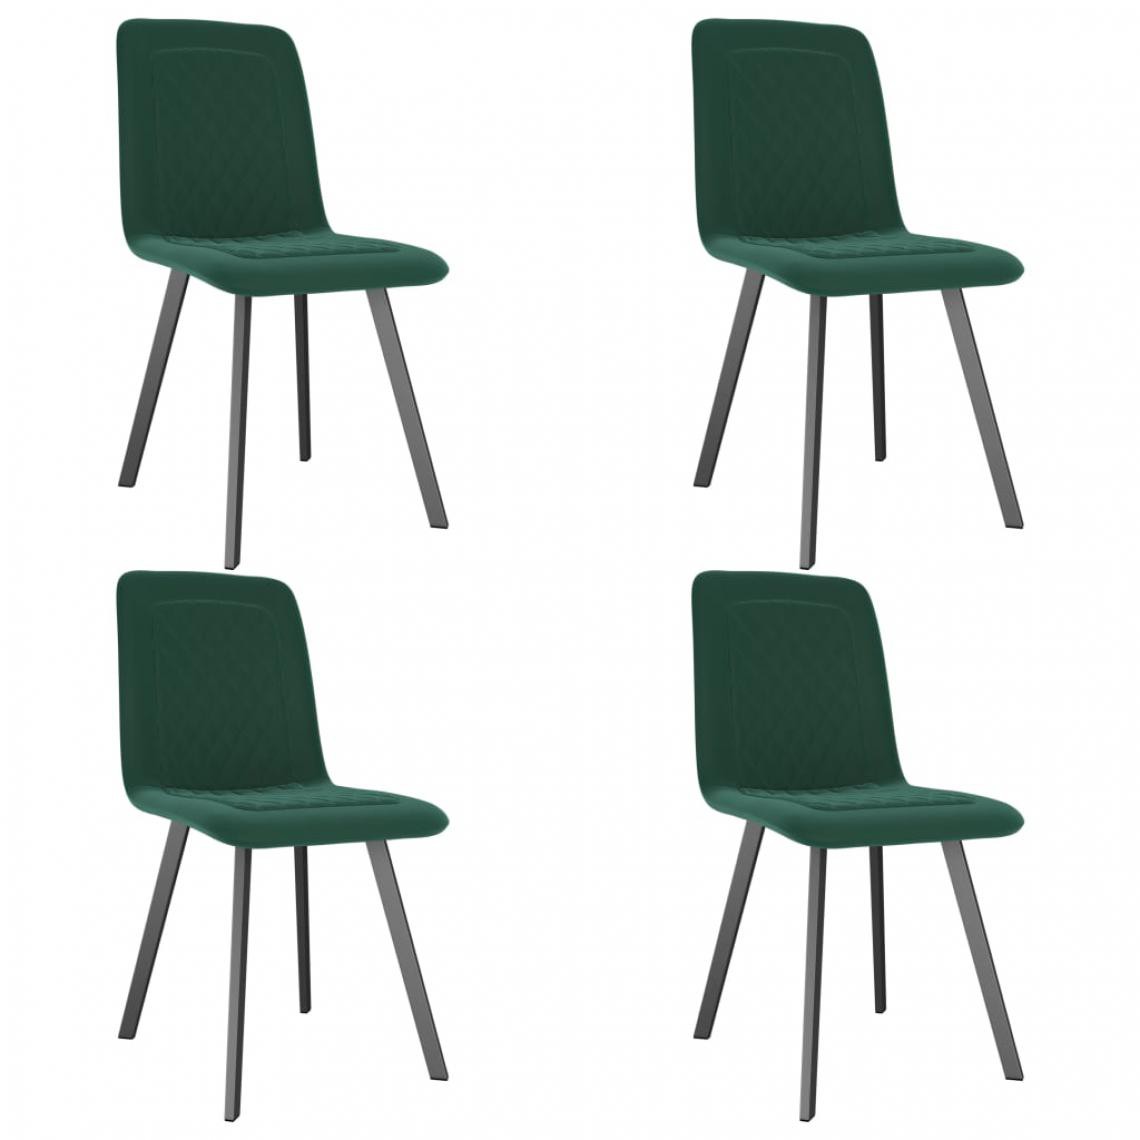 Icaverne - Superbe Fauteuils et chaises collection Luanda Chaises de salle à manger 4 pcs Vert Velours - Chaises